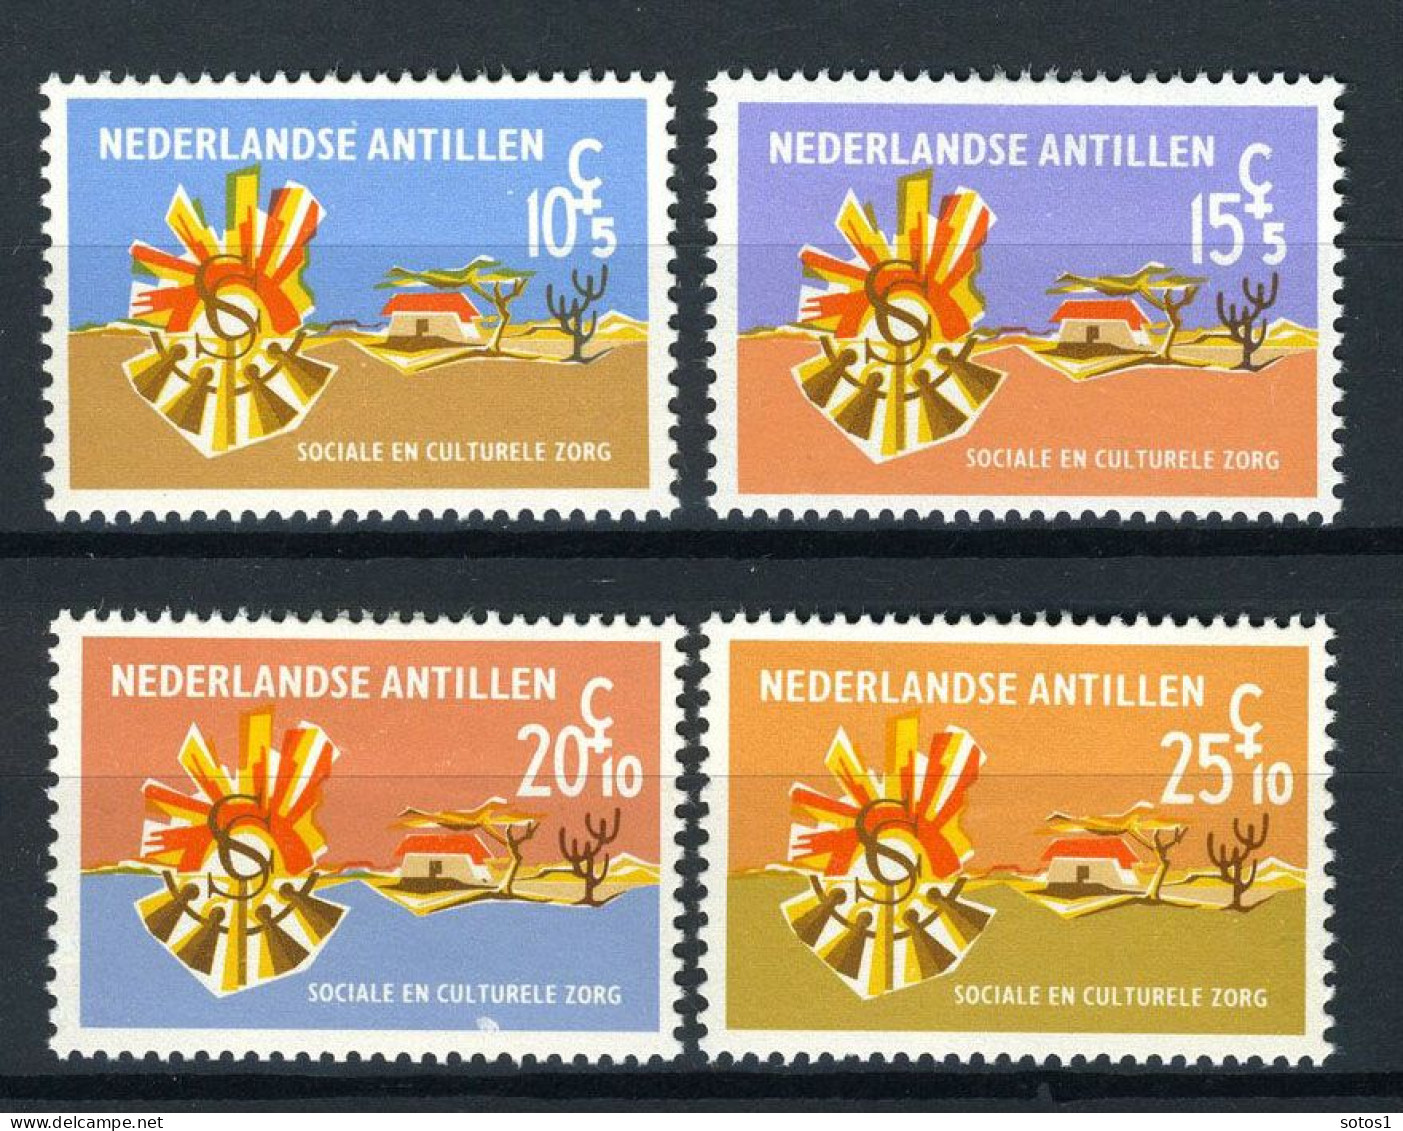 NL. ANTILLEN 396/399 MH 1968 - Zomerzegels. - Niederländische Antillen, Curaçao, Aruba